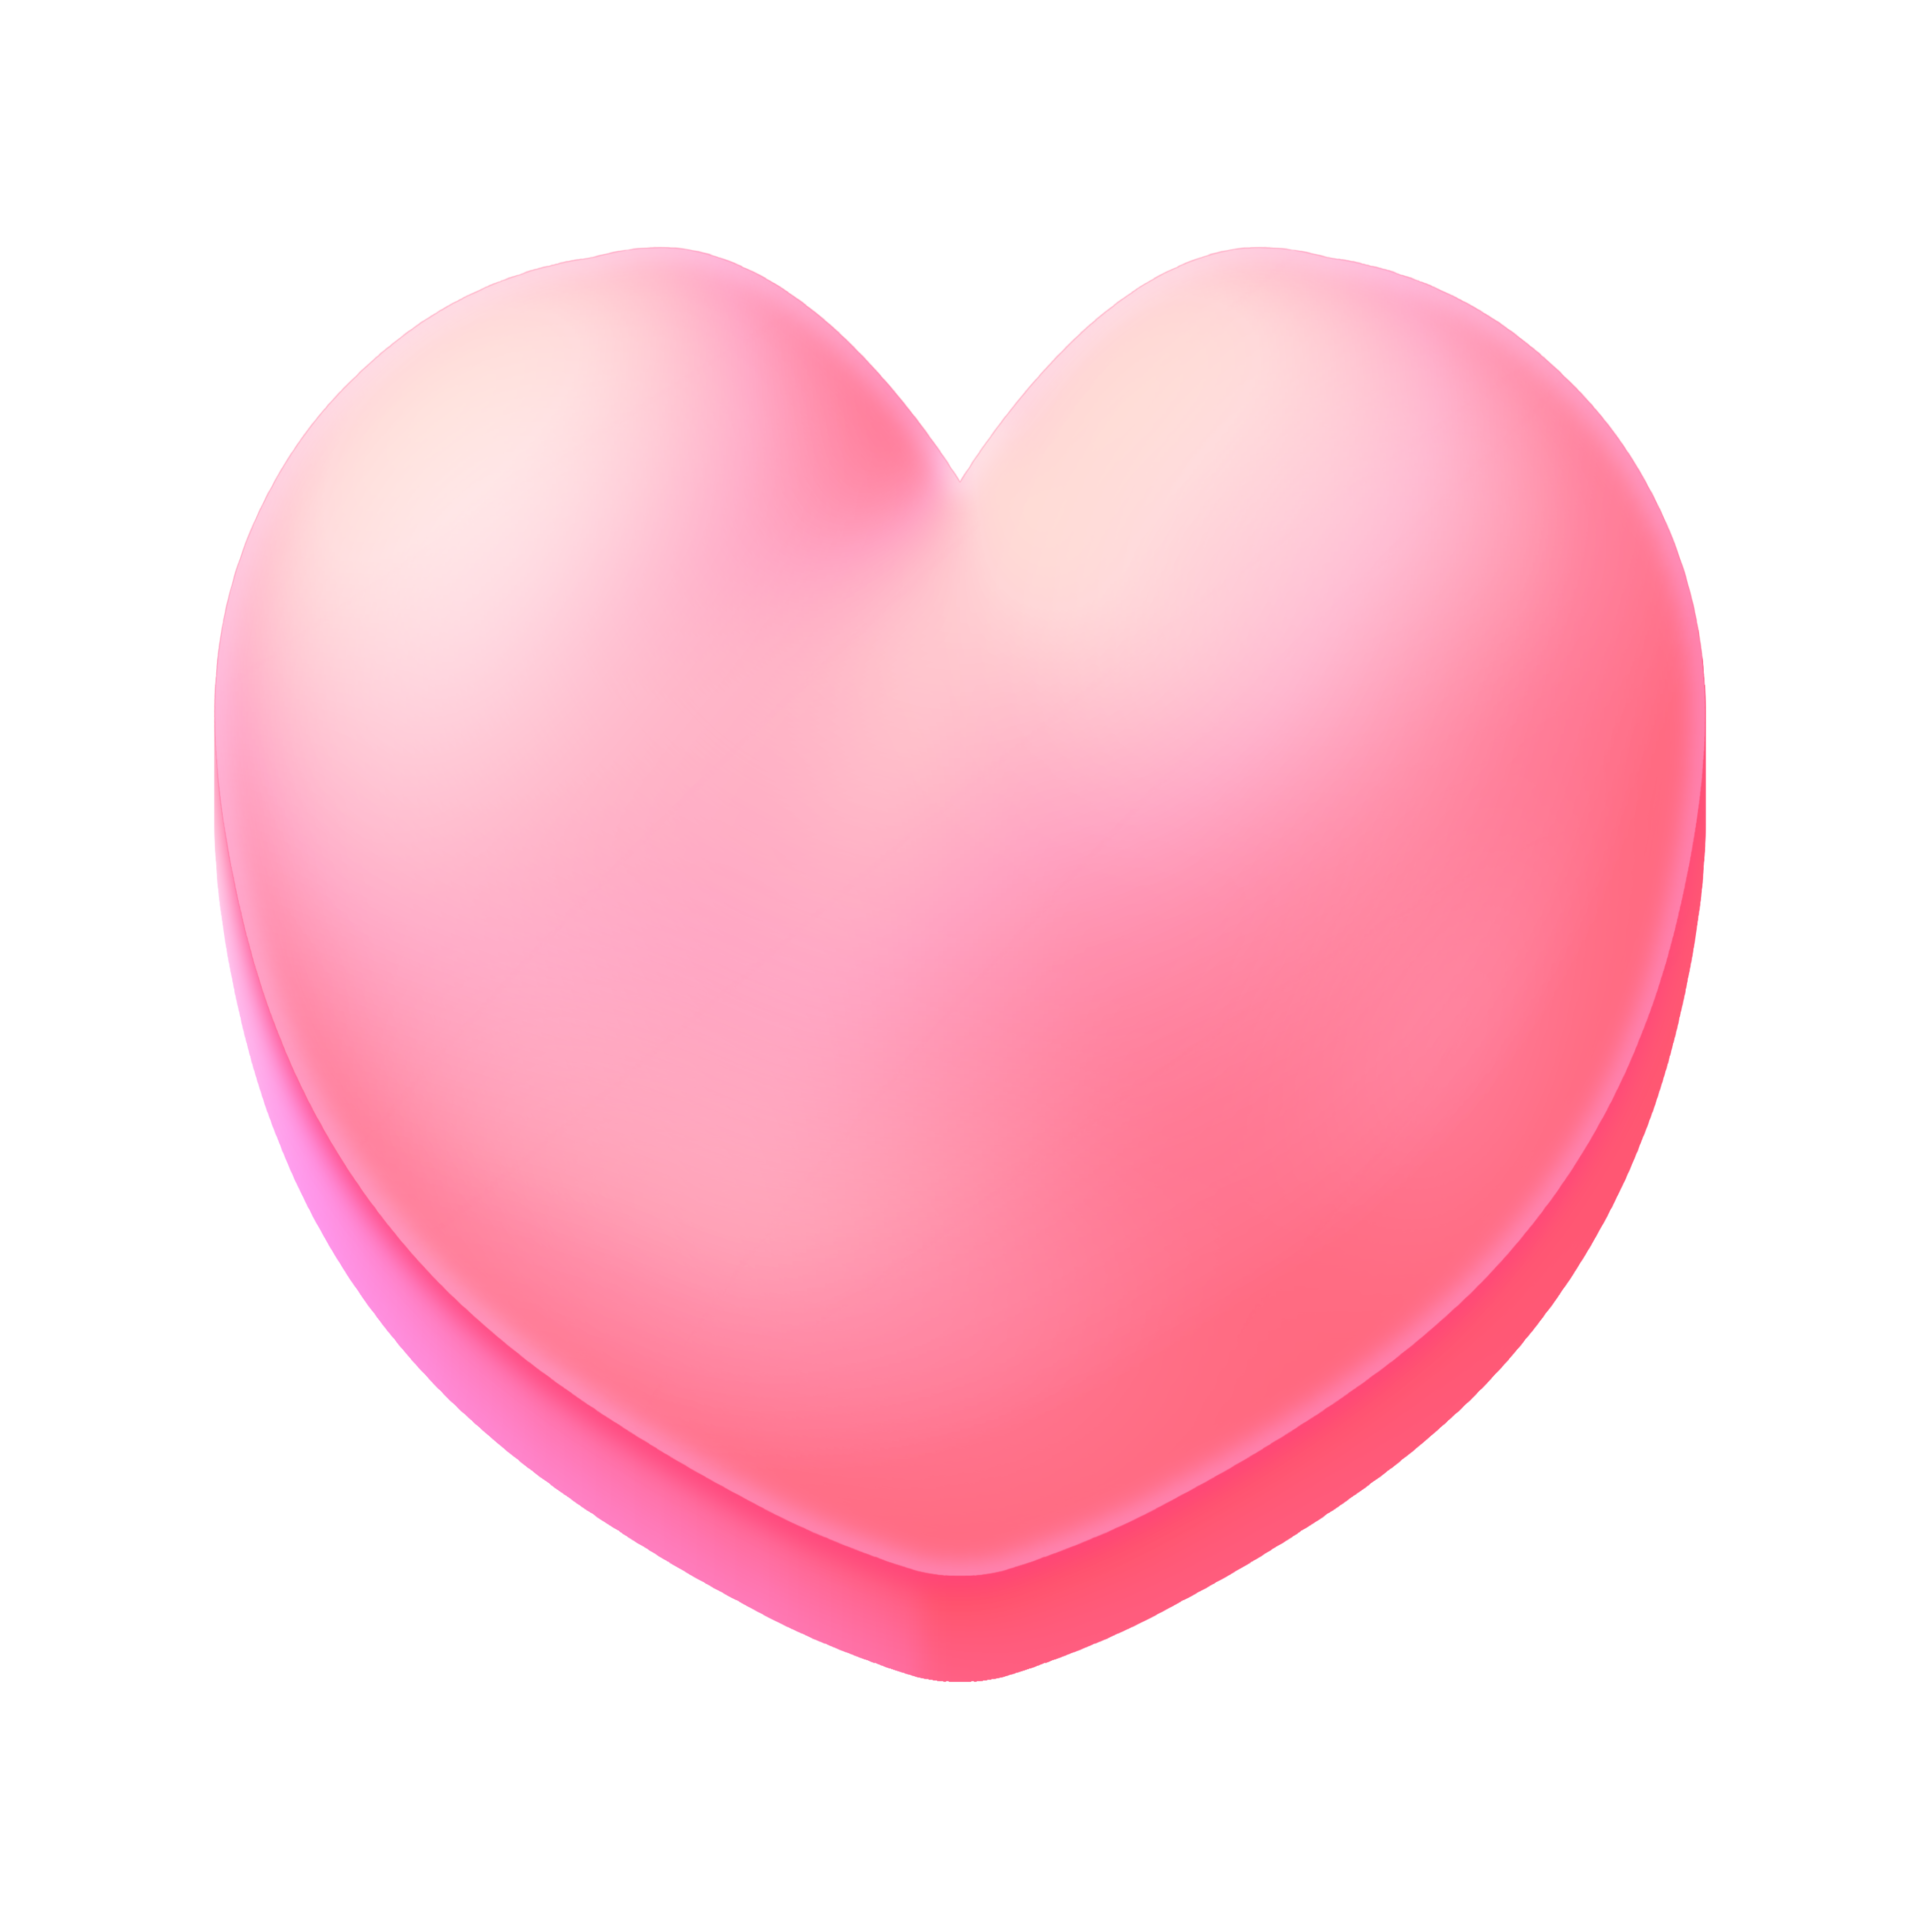 Pink Heart Game Asset: Hãy khám phá asset trò chơi cực kì dễ thương với hình trái tim màu hồng. Với sự kết hợp hoàn hảo giữa gam màu này và hình dáng đáng yêu của trái tim, bạn sẽ có được những trải nghiệm thú vị và ngọt ngào khi chơi trò chơi. Hãy nhanh tay tải ngay asset này để khám phá những điều thú vị nào!